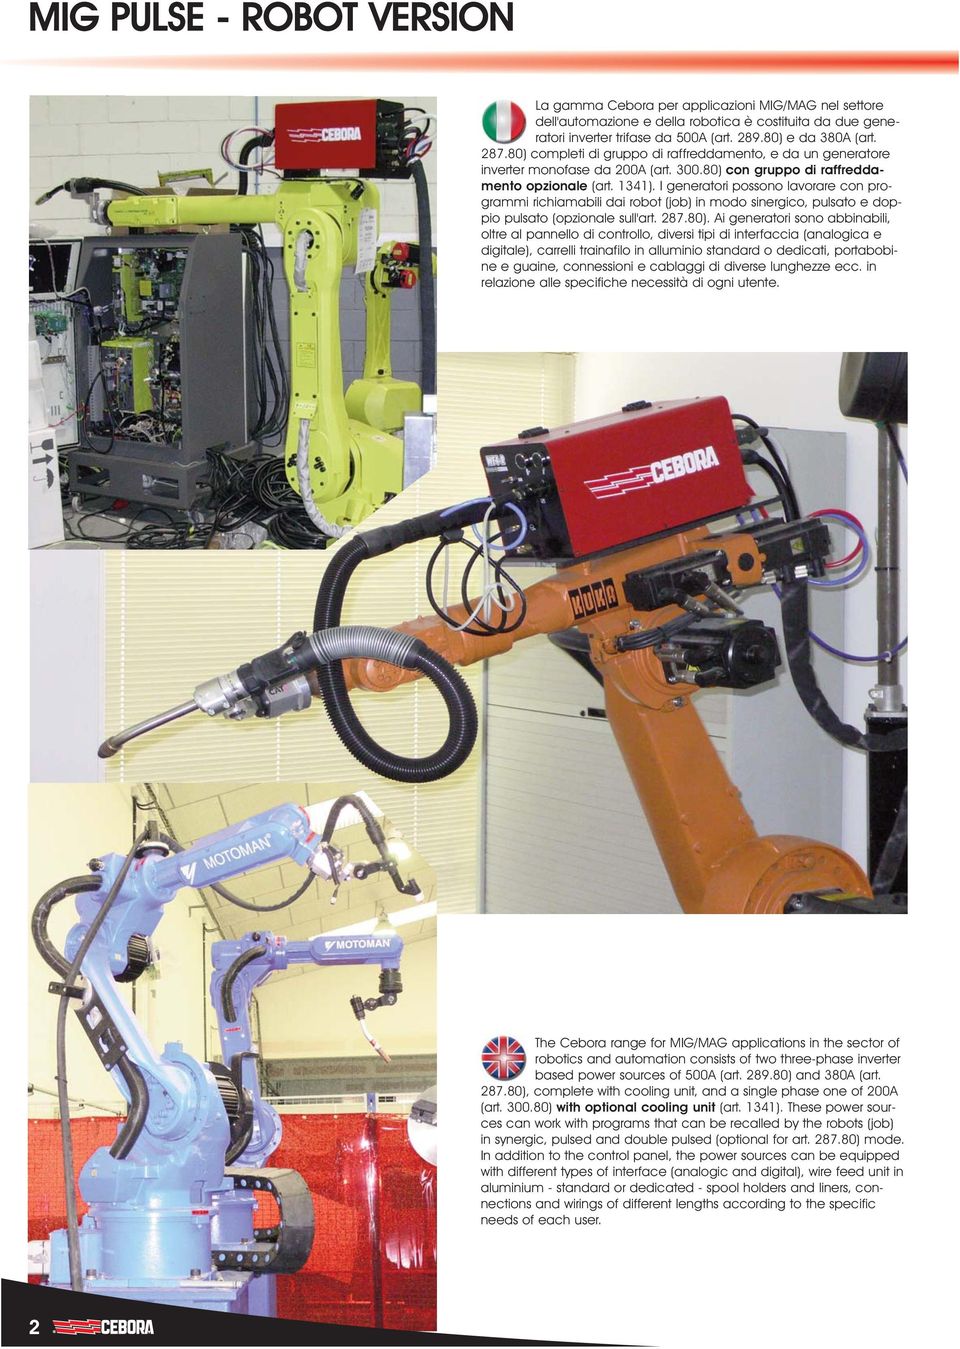 I generatori possono lavorare con programmi richiamabili dai robot (job) in modo sinergico, pulsato e doppio pulsato (opzionale sull'art. 287.80).